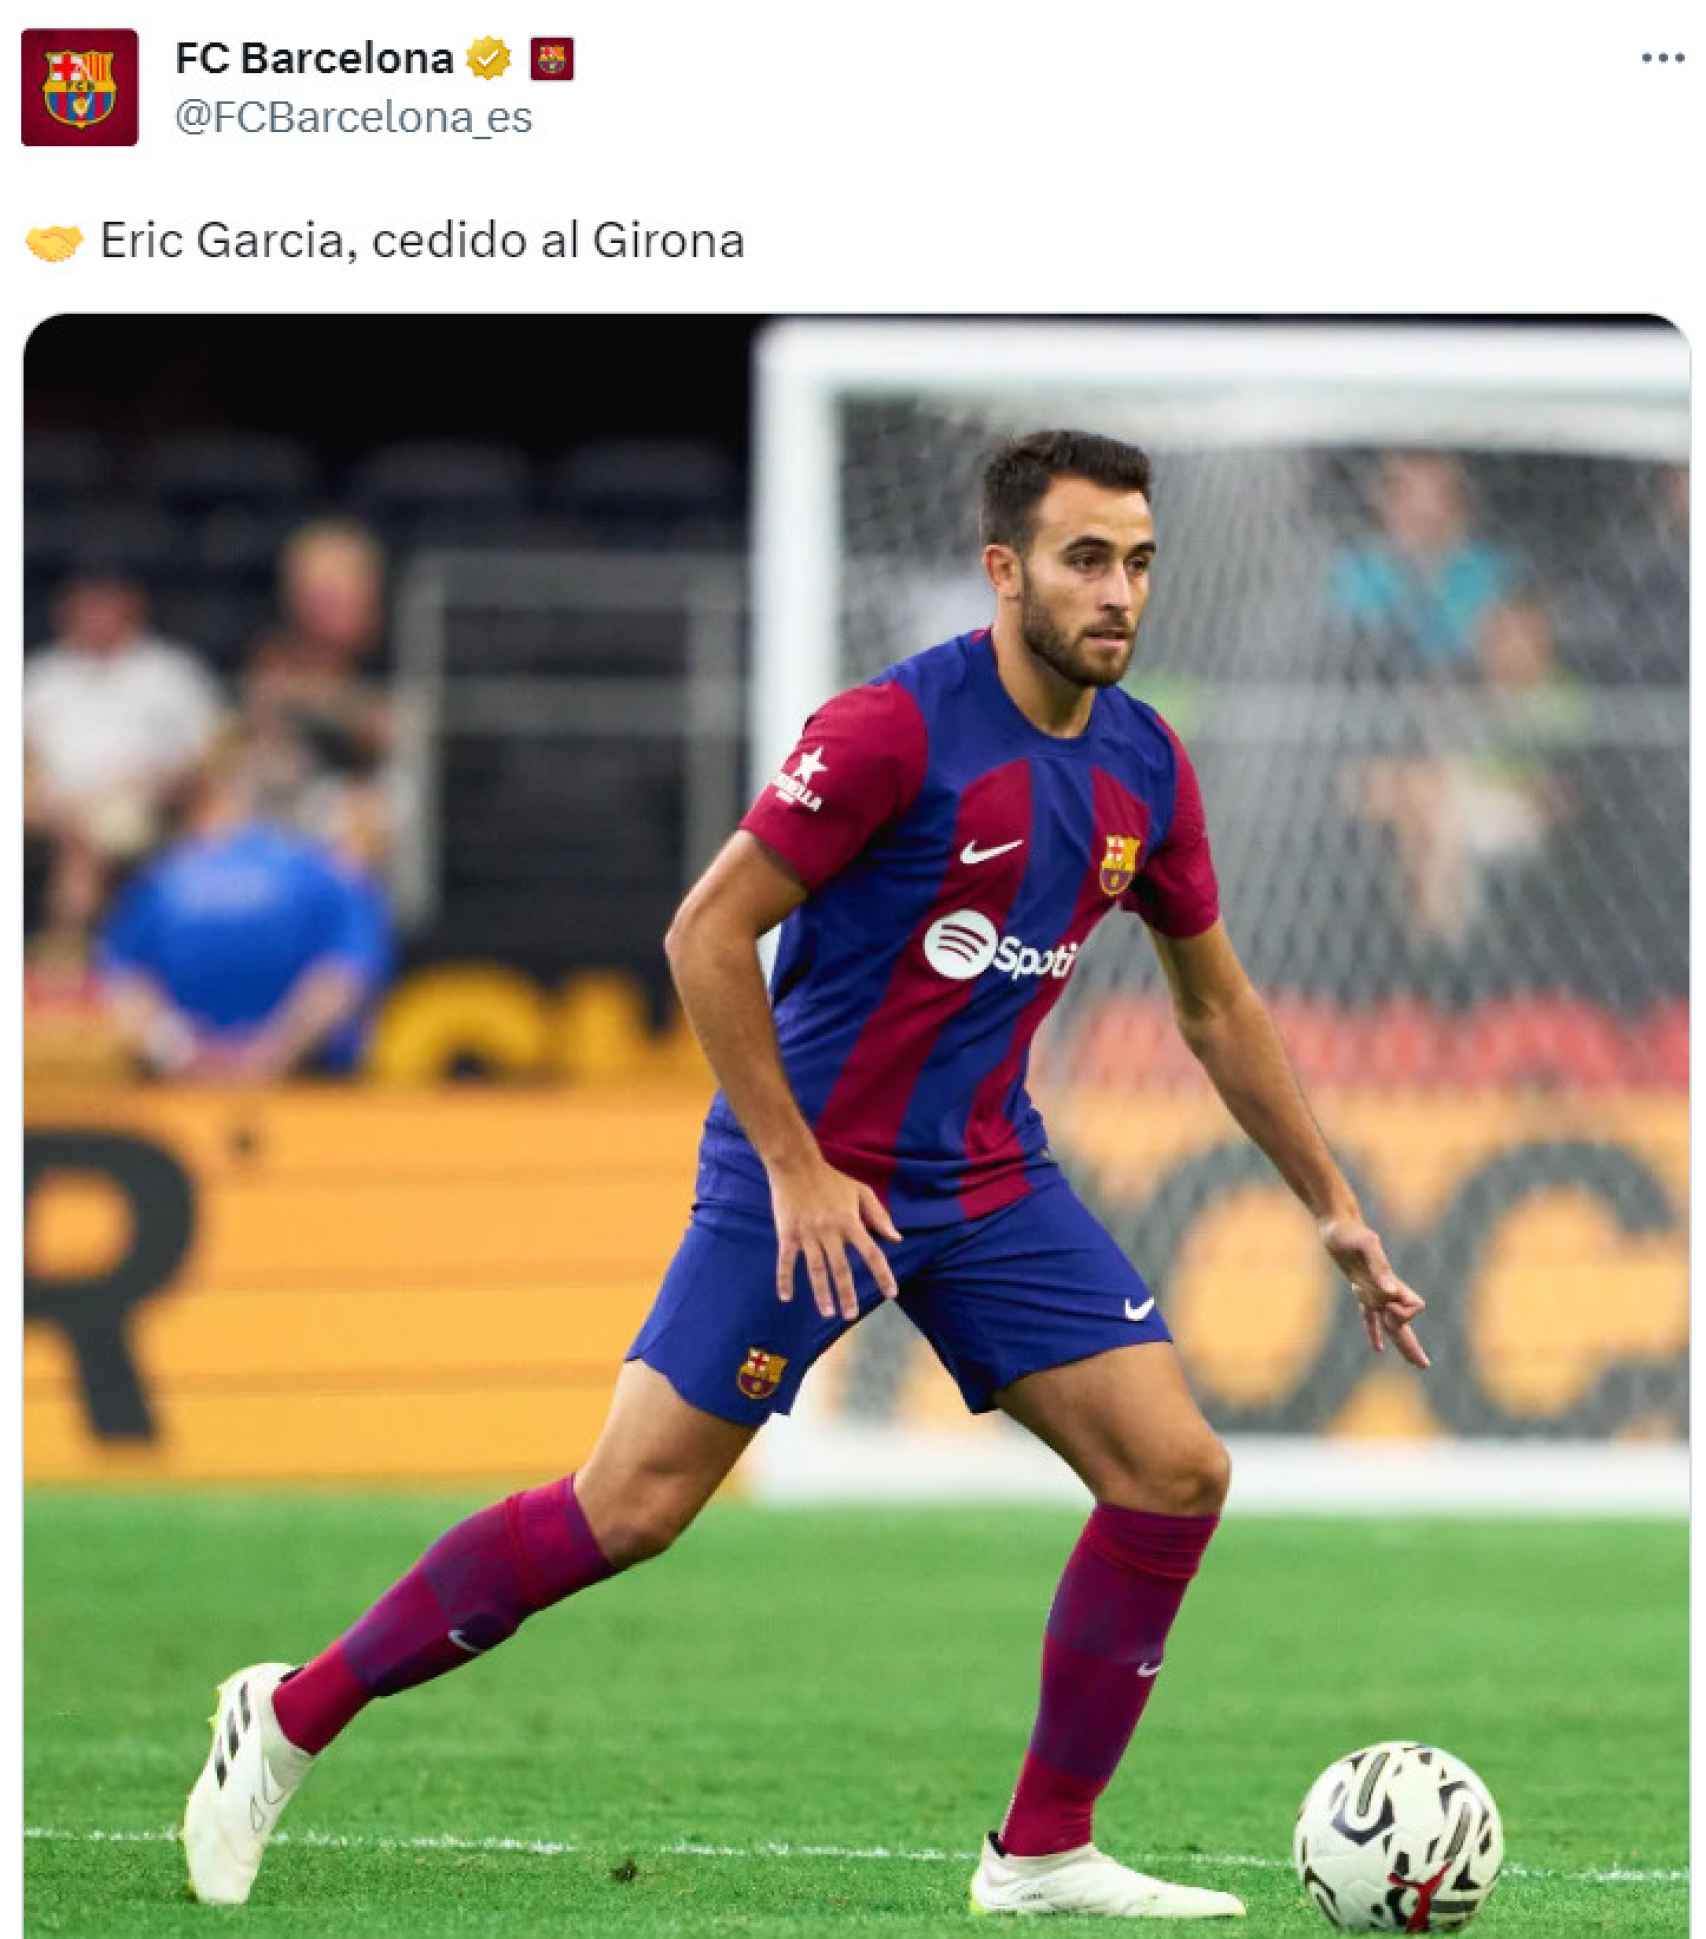 El Barça anuncia la cesión de Éric García al Girona